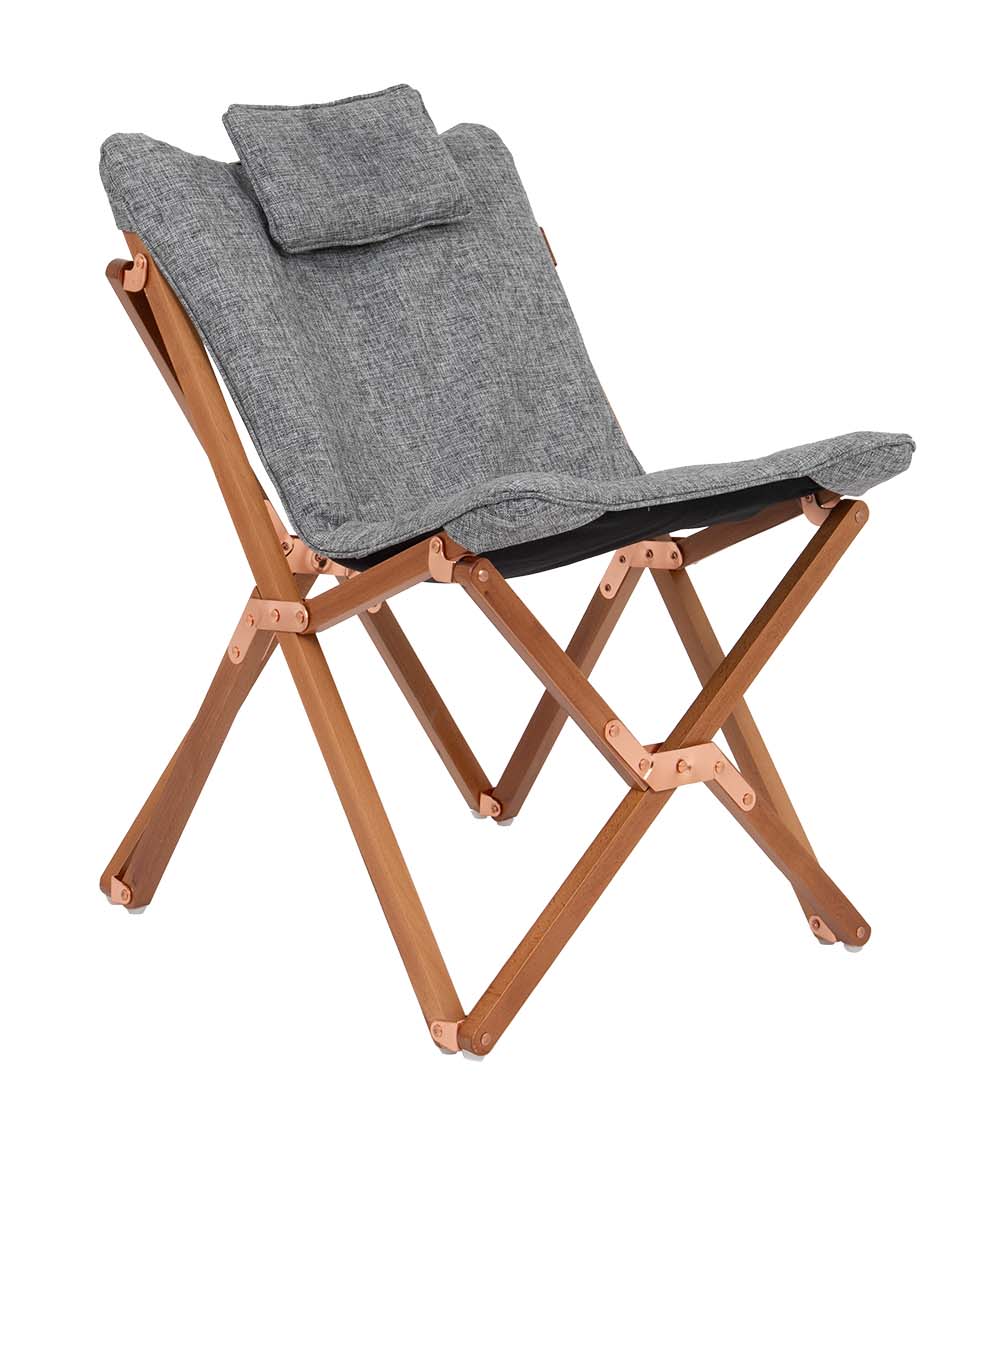 1200368 Een zeer luxe en comfortabele relaxstoel in de kleinste maat. Deze stoel is voorzien van een stijlvol en stevig houten frame. De zitting is gemaakt van Oxford polyester en heeft een linnen look. Daarnaast is de stof voorzien van een comfortabele gepolsterde vulling. De combinatie van een extra brede en diepe zit, de gepolsterde stof en het hoofdkussen maakt deze stoel uiterst comfortabel. Het frame is inklapbaar waardoor de stoel eenvoudig is mee te nemen. Maar ook in de woonkamer, op het balkon of in de tuin kan deze stoel worden gebruikt!